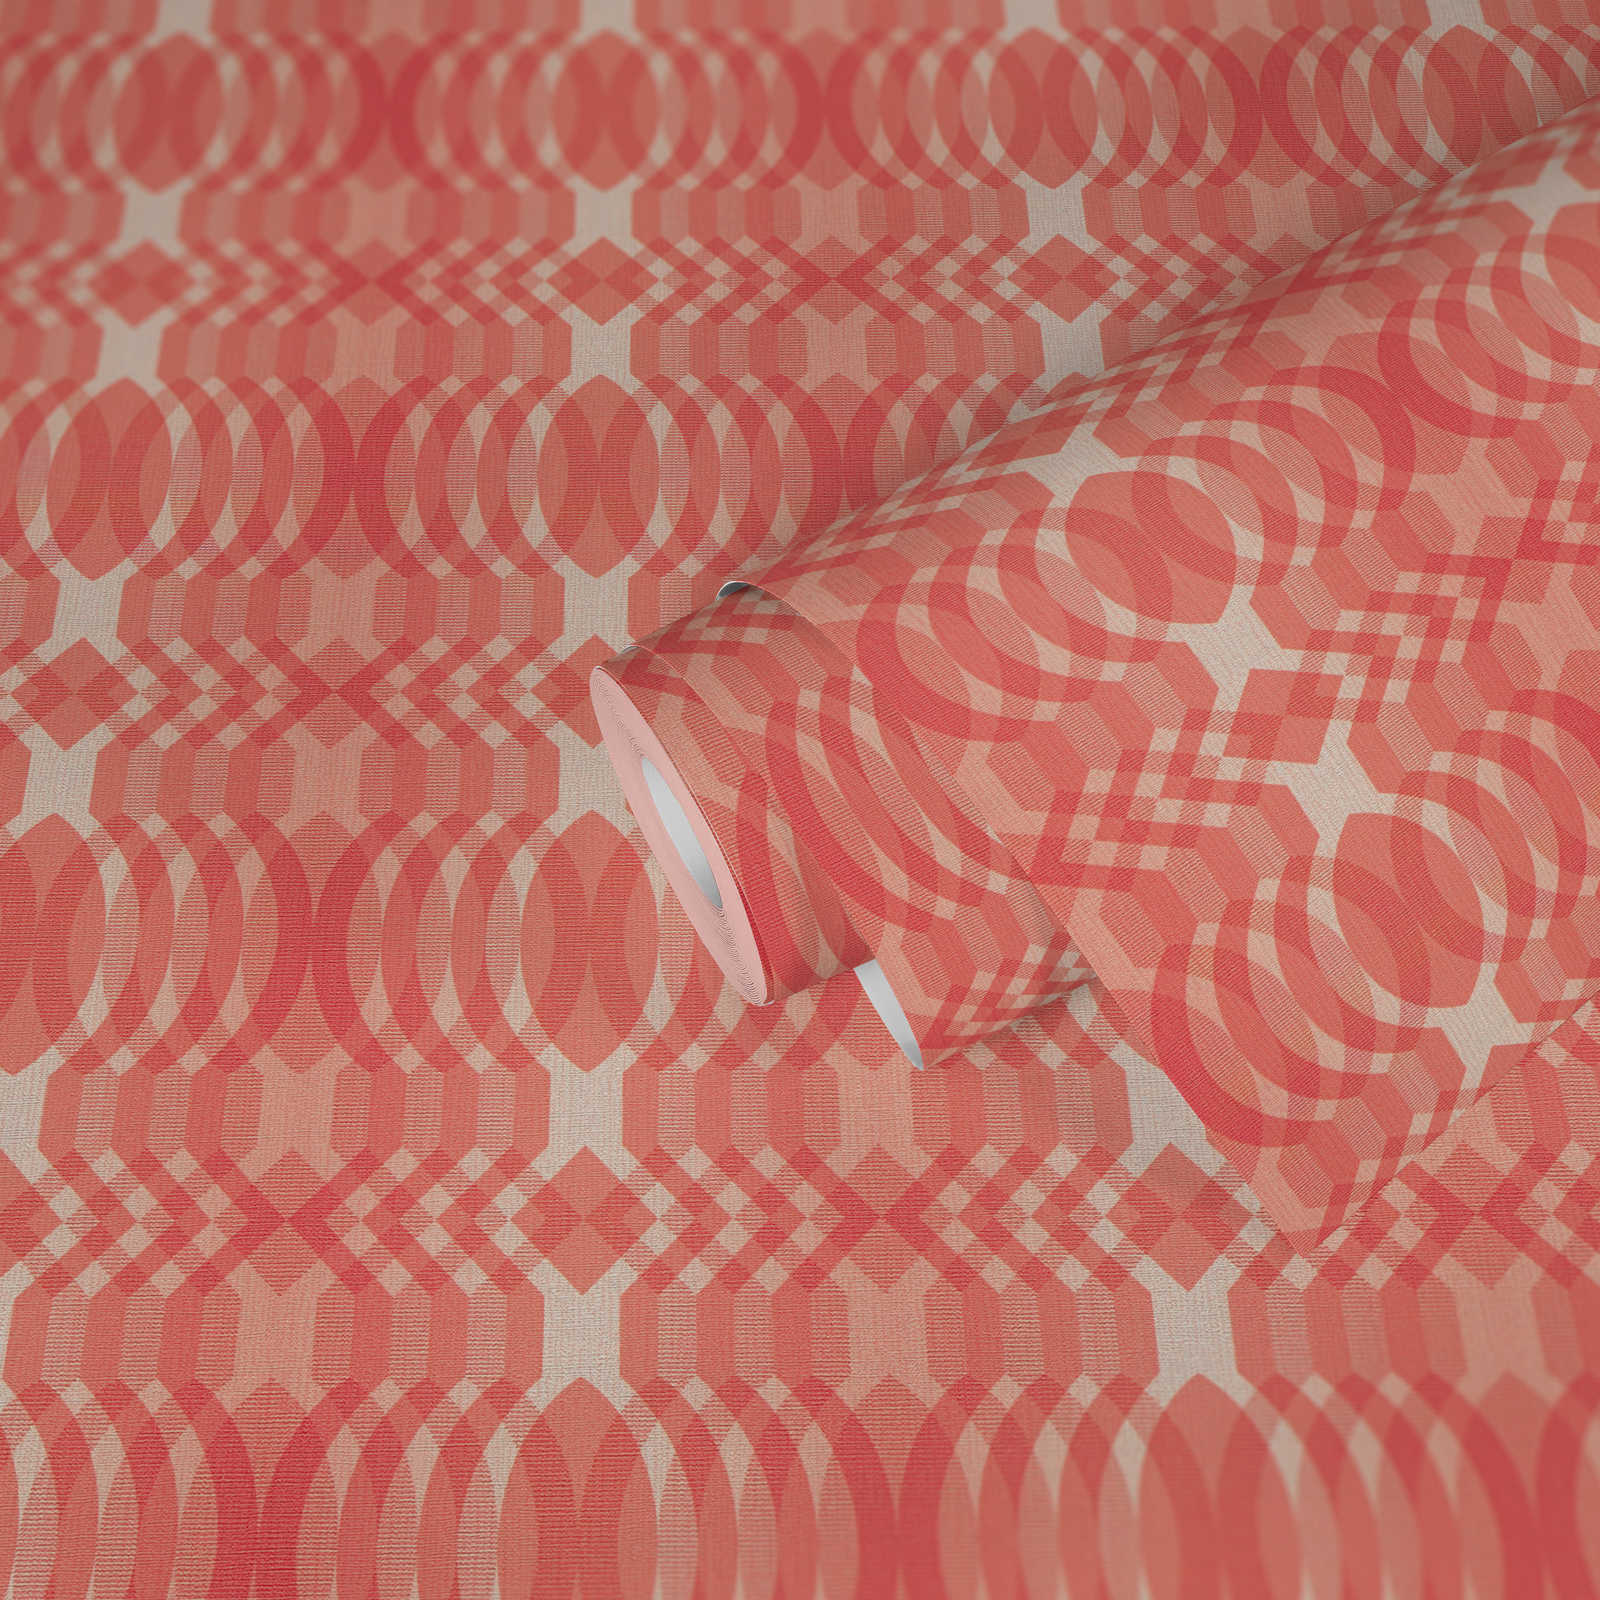             Geometrische Bemusterung auf Vliestapete im Retro Stil – Rot, Creme, Weiß
        